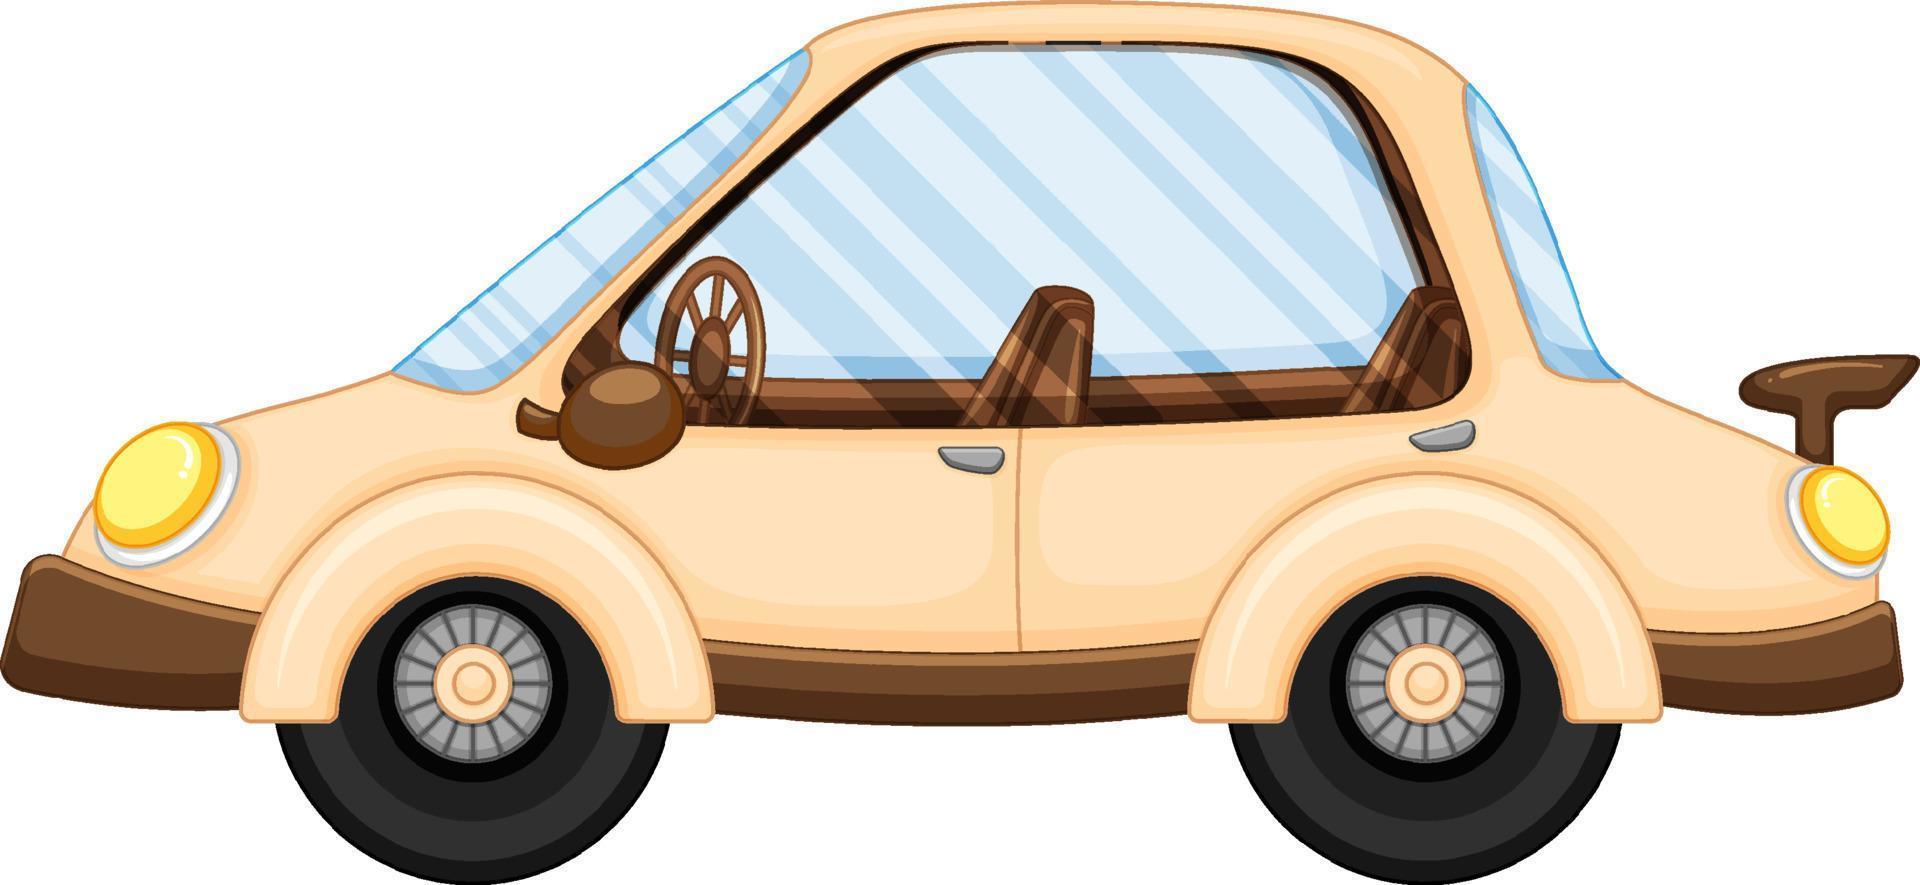 A car in cartoon style vector